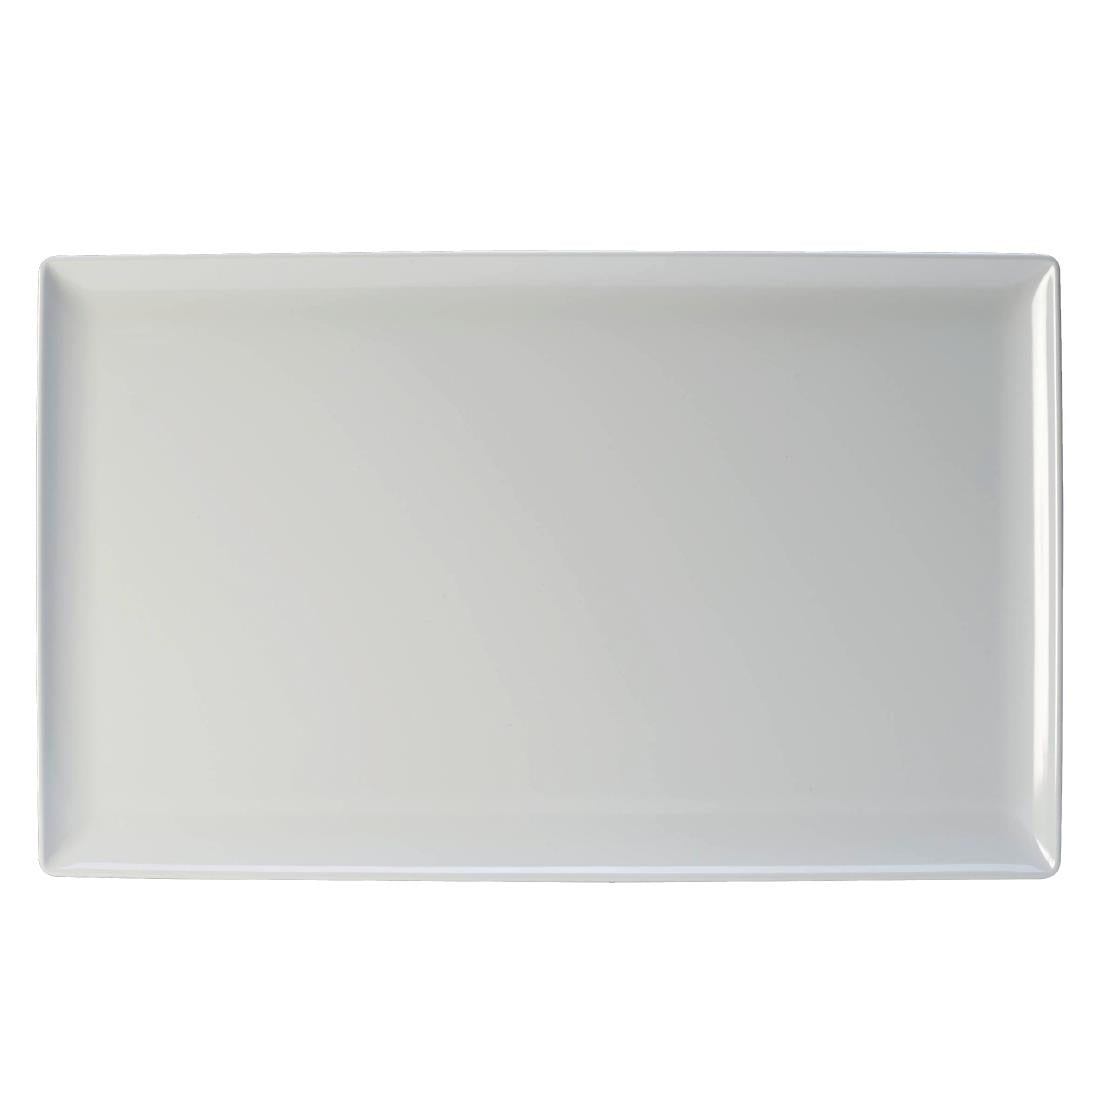 Steelite Craft Melamine Rectangular Platter White GN 1/1